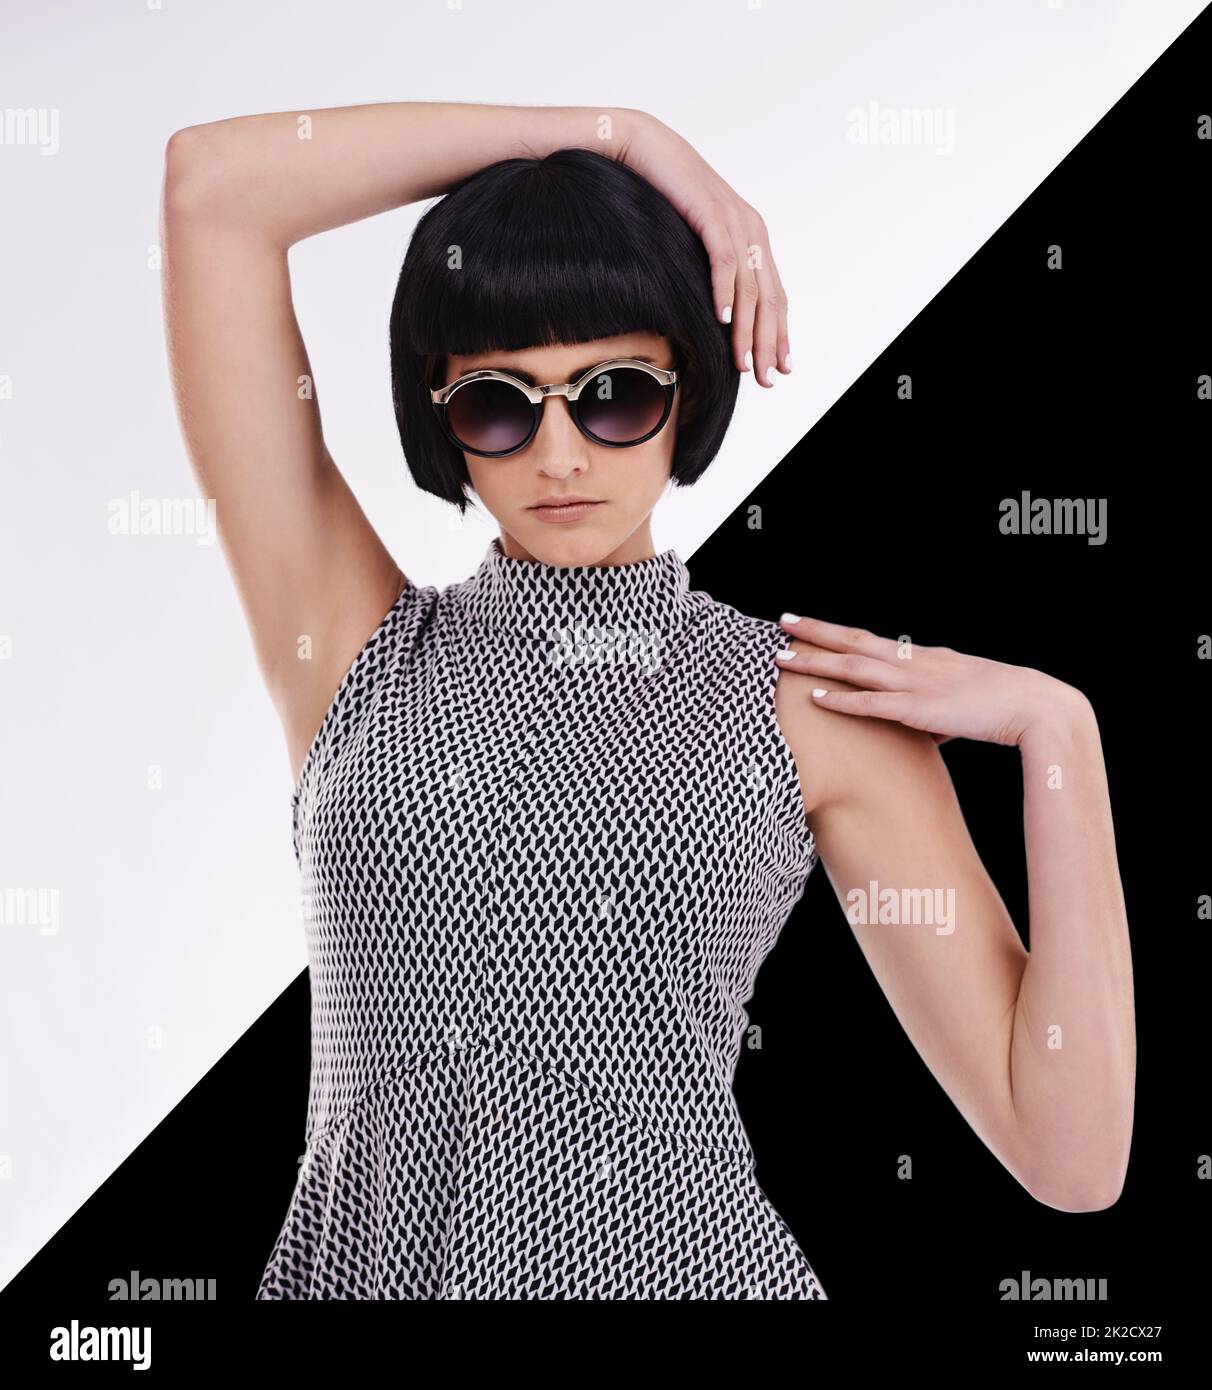 Die einzigen zwei Farben, die Sie in der Mode brauchen. Studioaufnahme einer jungen Frau im Retro-Stil vor einem schwarz-weißen Hintergrund. Stockfoto